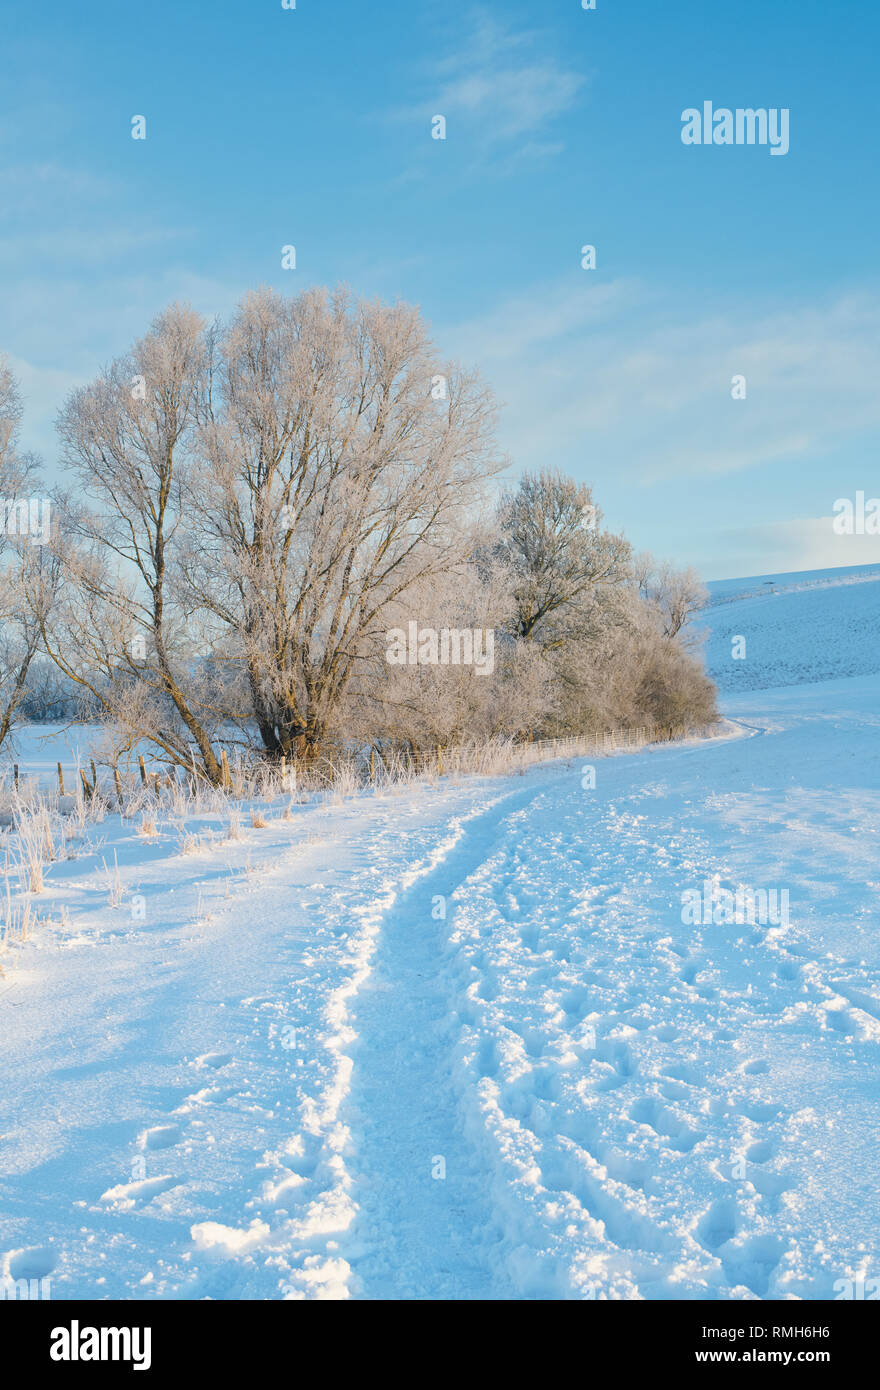 Couvert de neige paysage d'hiver et couverts de givre en bocage, Avebury Wiltshire, Angleterre Banque D'Images